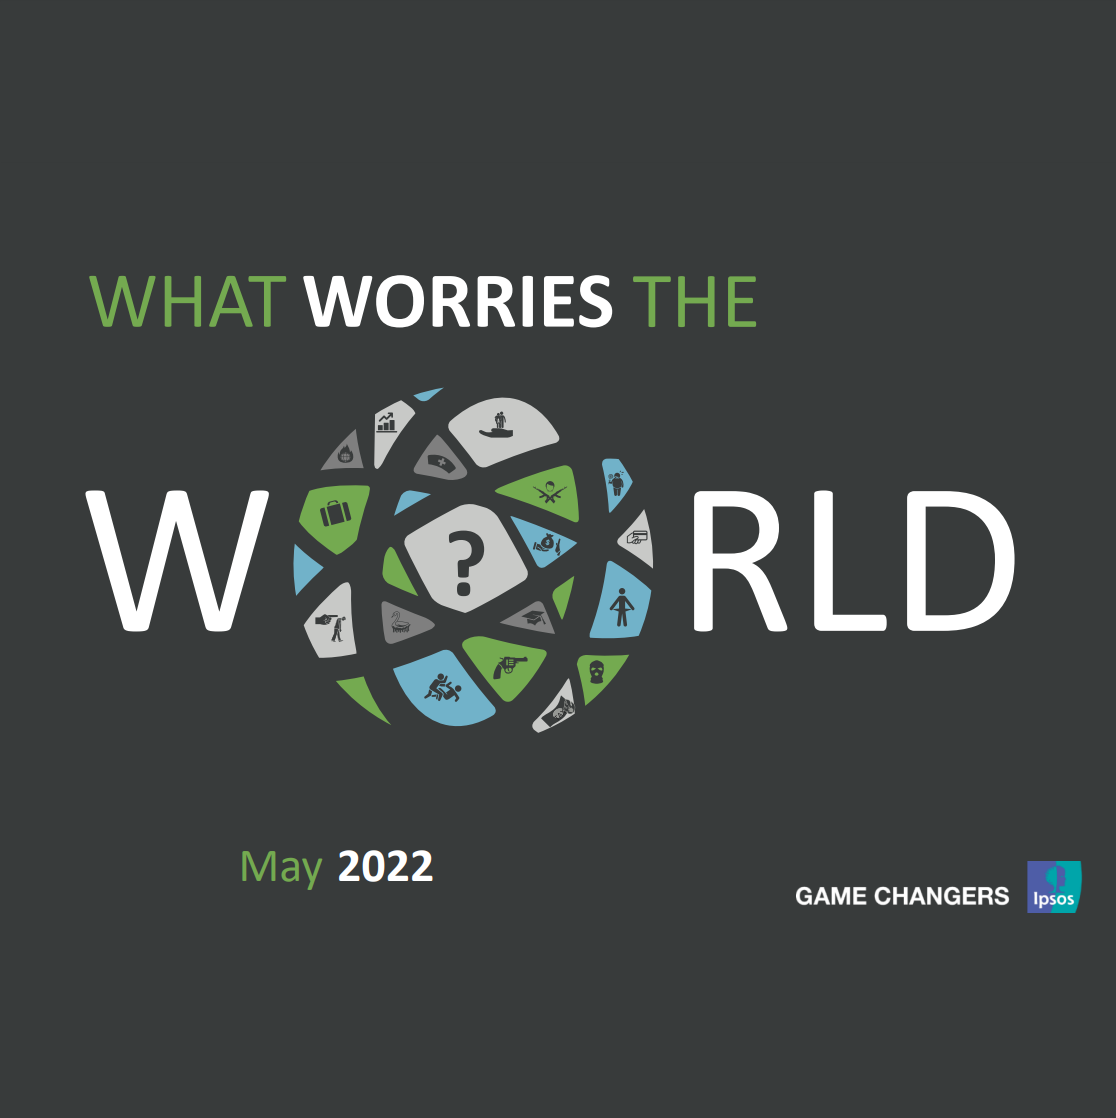 Estudio: Ipsos – Preocupaciones del mundo Mayo 2022